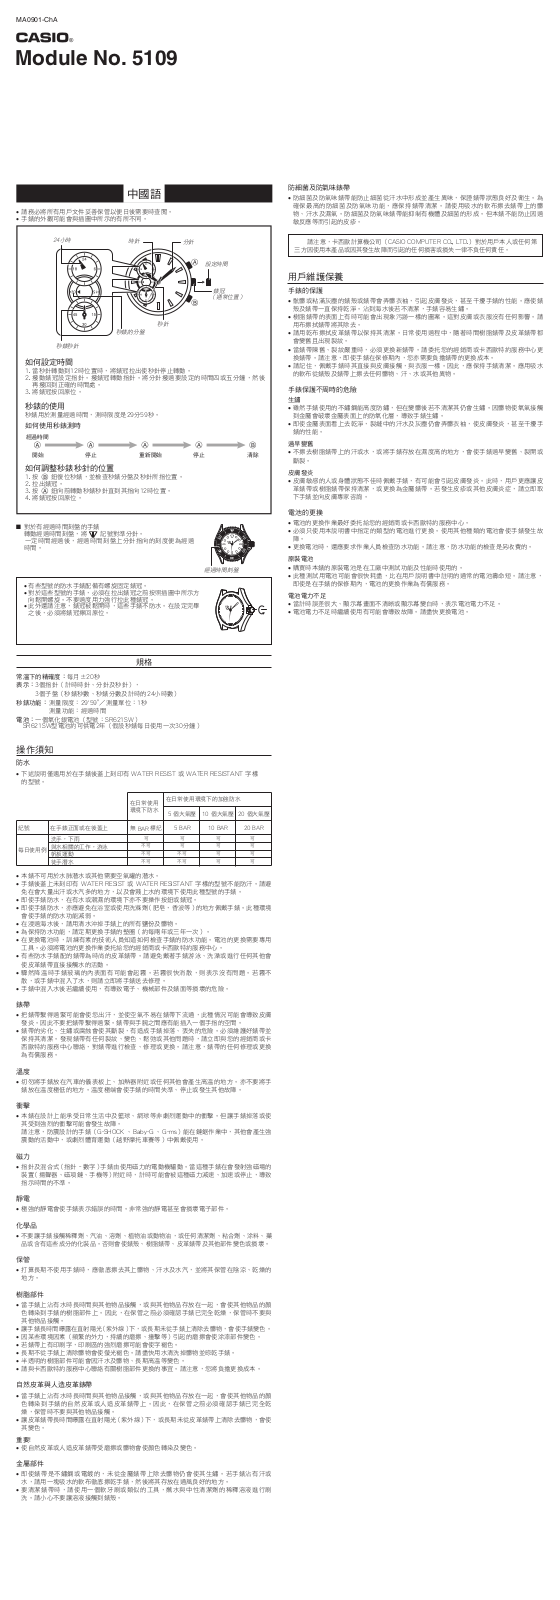 CASIO 5109 User Manual